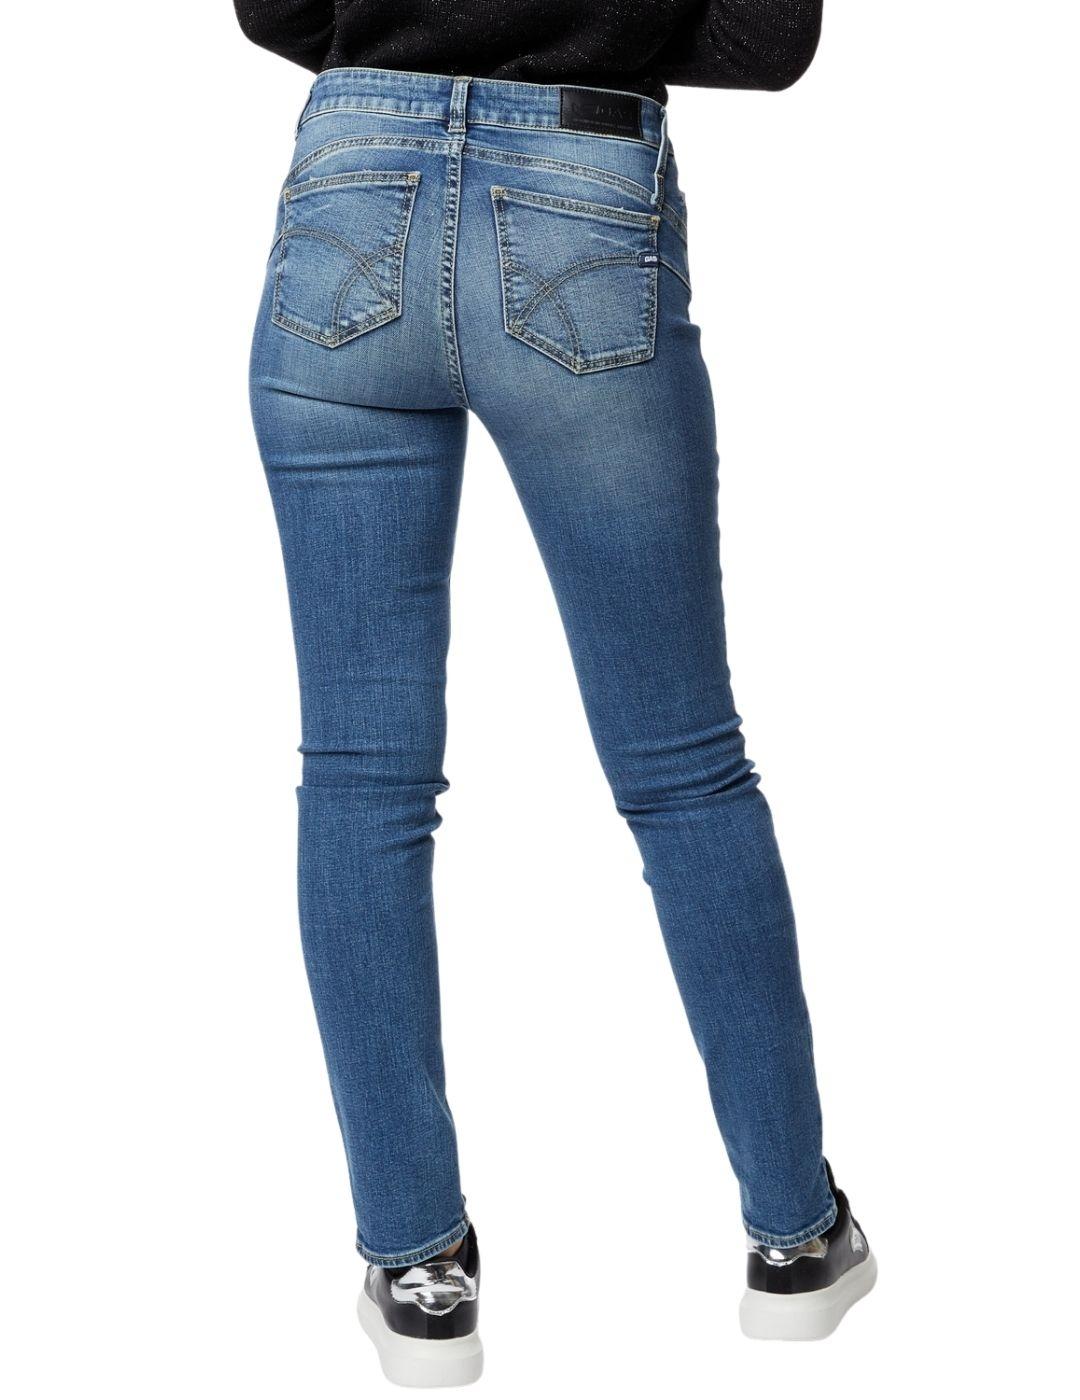 Pantalón Gas Jeans Britty Up elástico ajustado de mujer